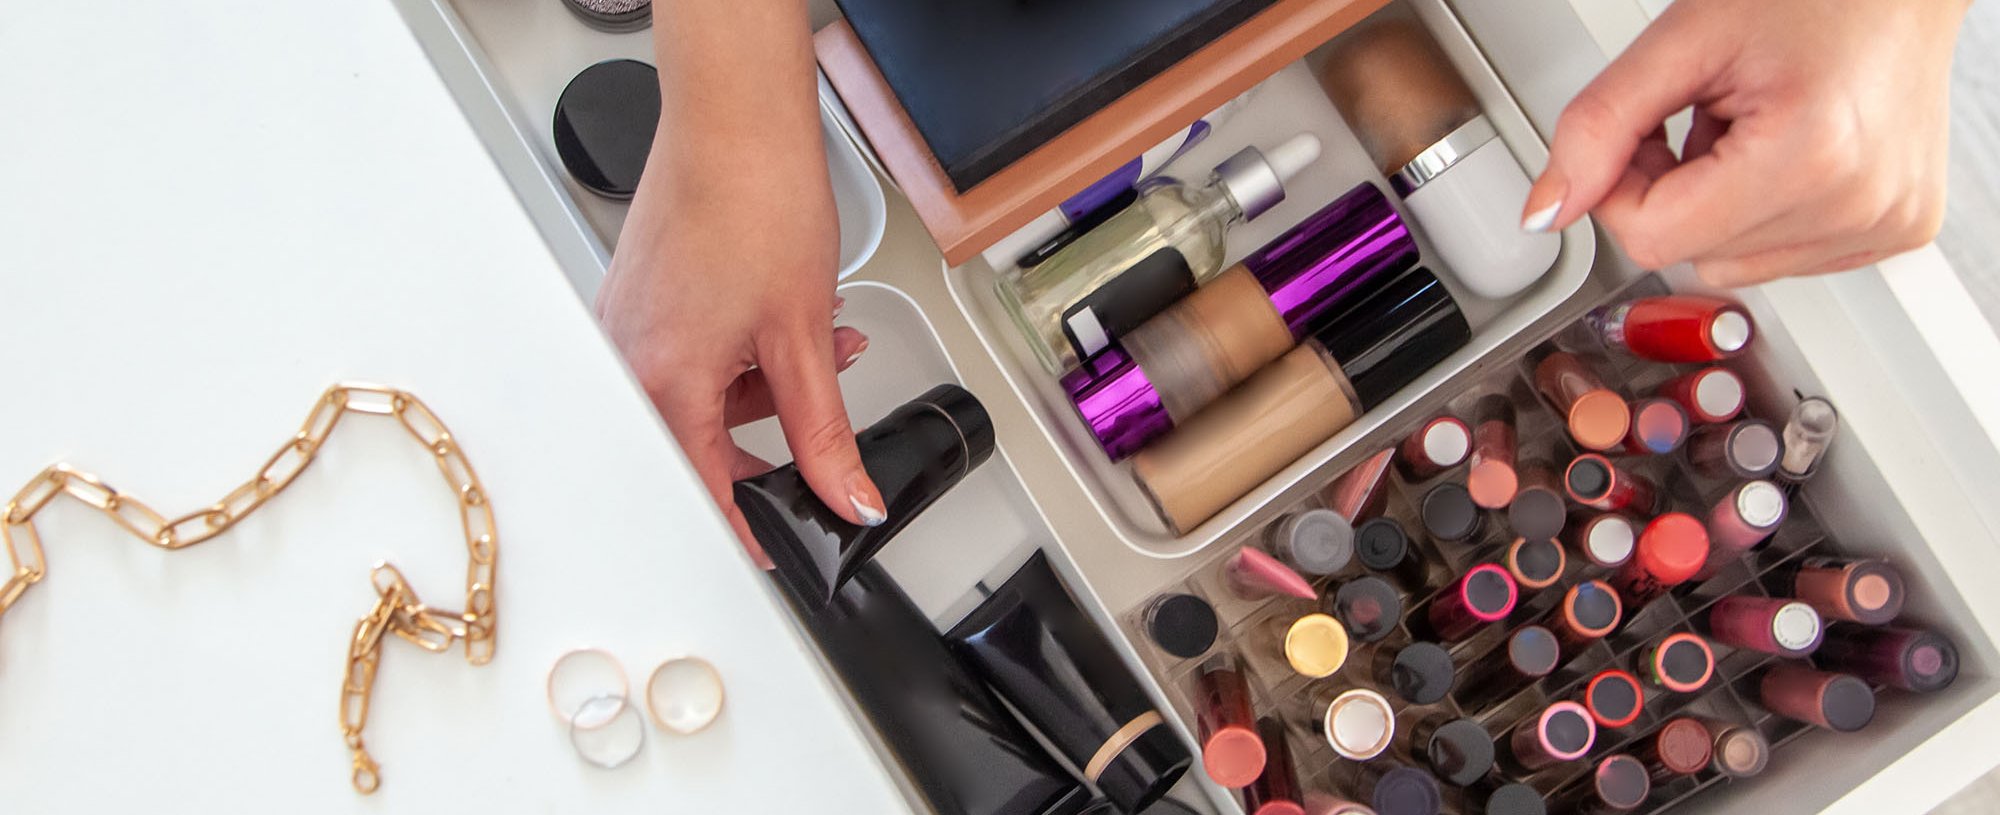 How To Organize Your Makeup Collection - L’Oréal Paris